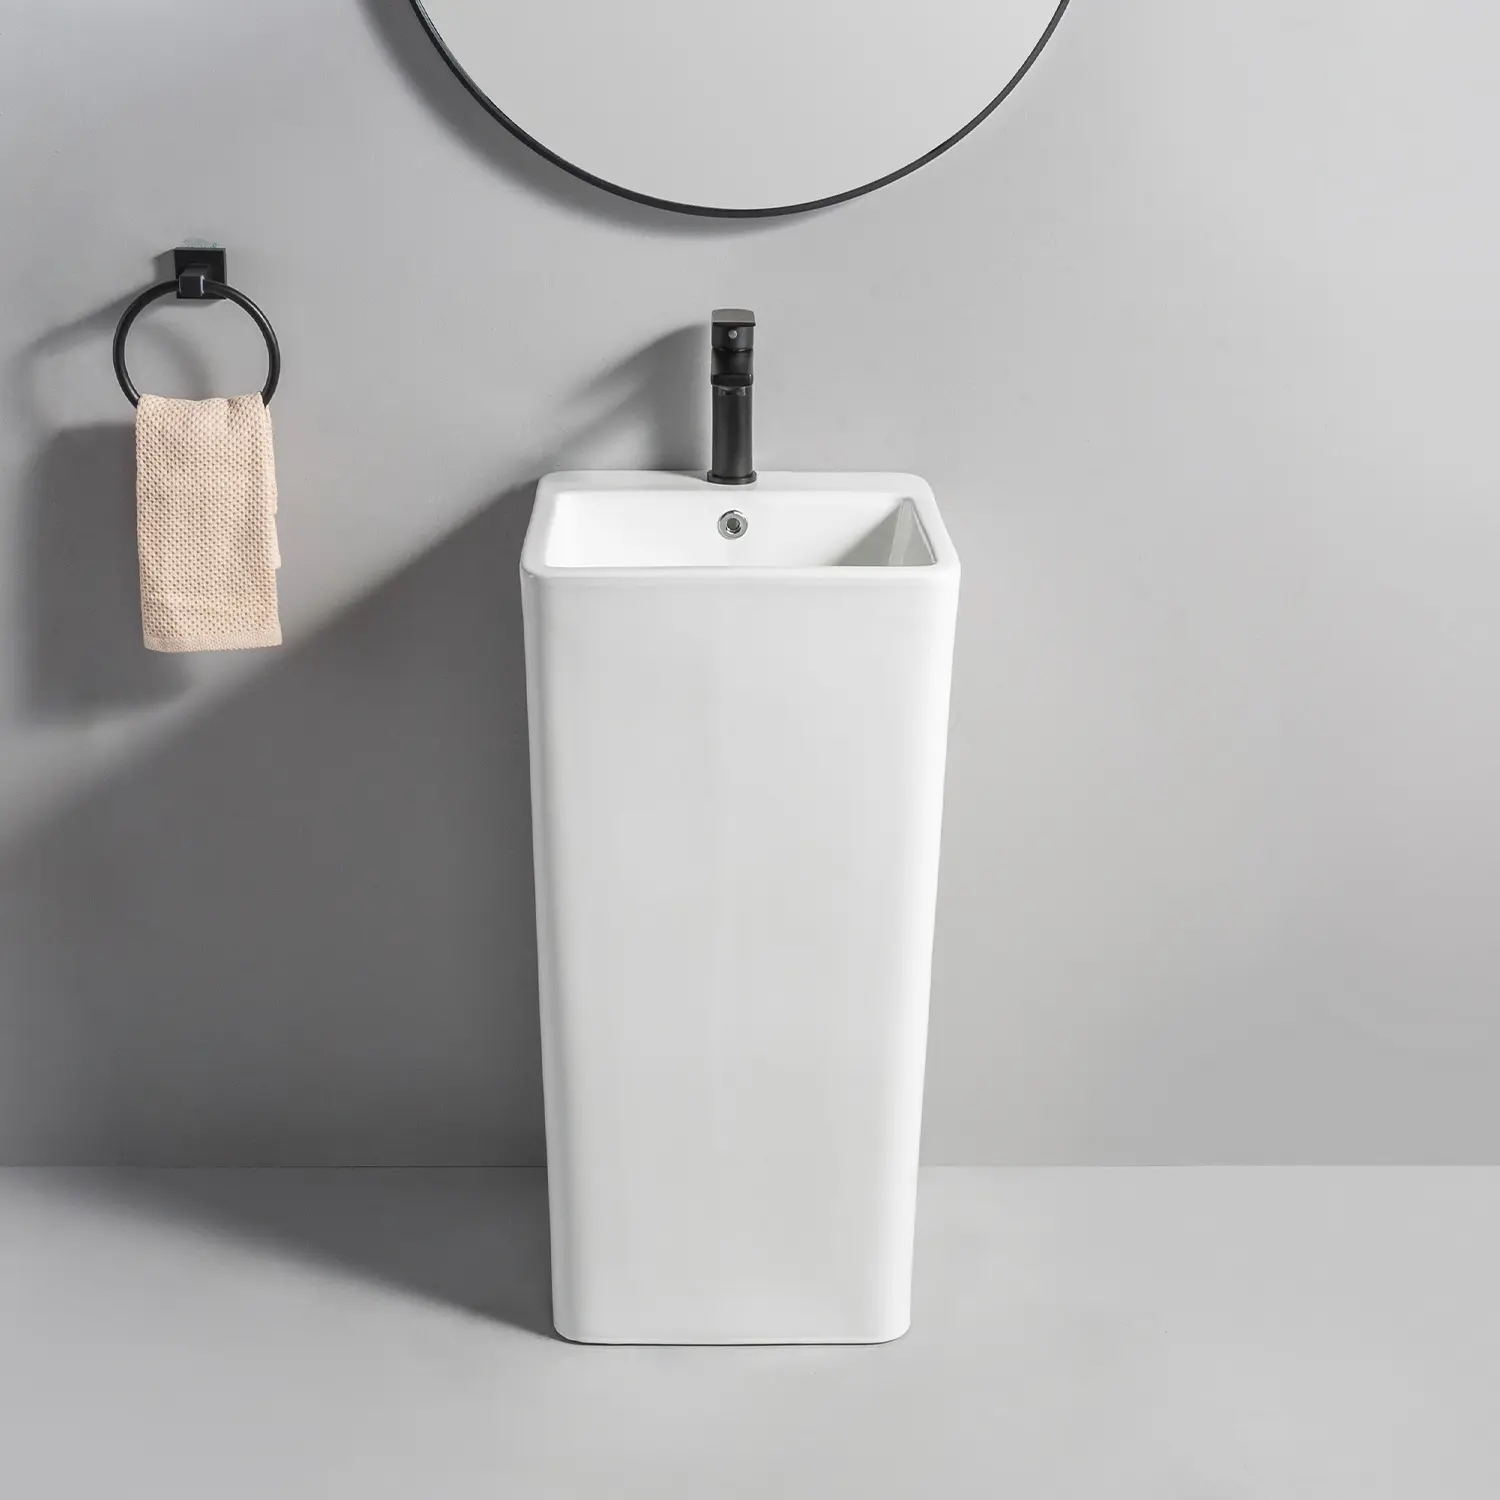 Bandeja de pilar integrado, pila de cerámica hecha a medida, lavabo de Pedestal de baño con precio bajo